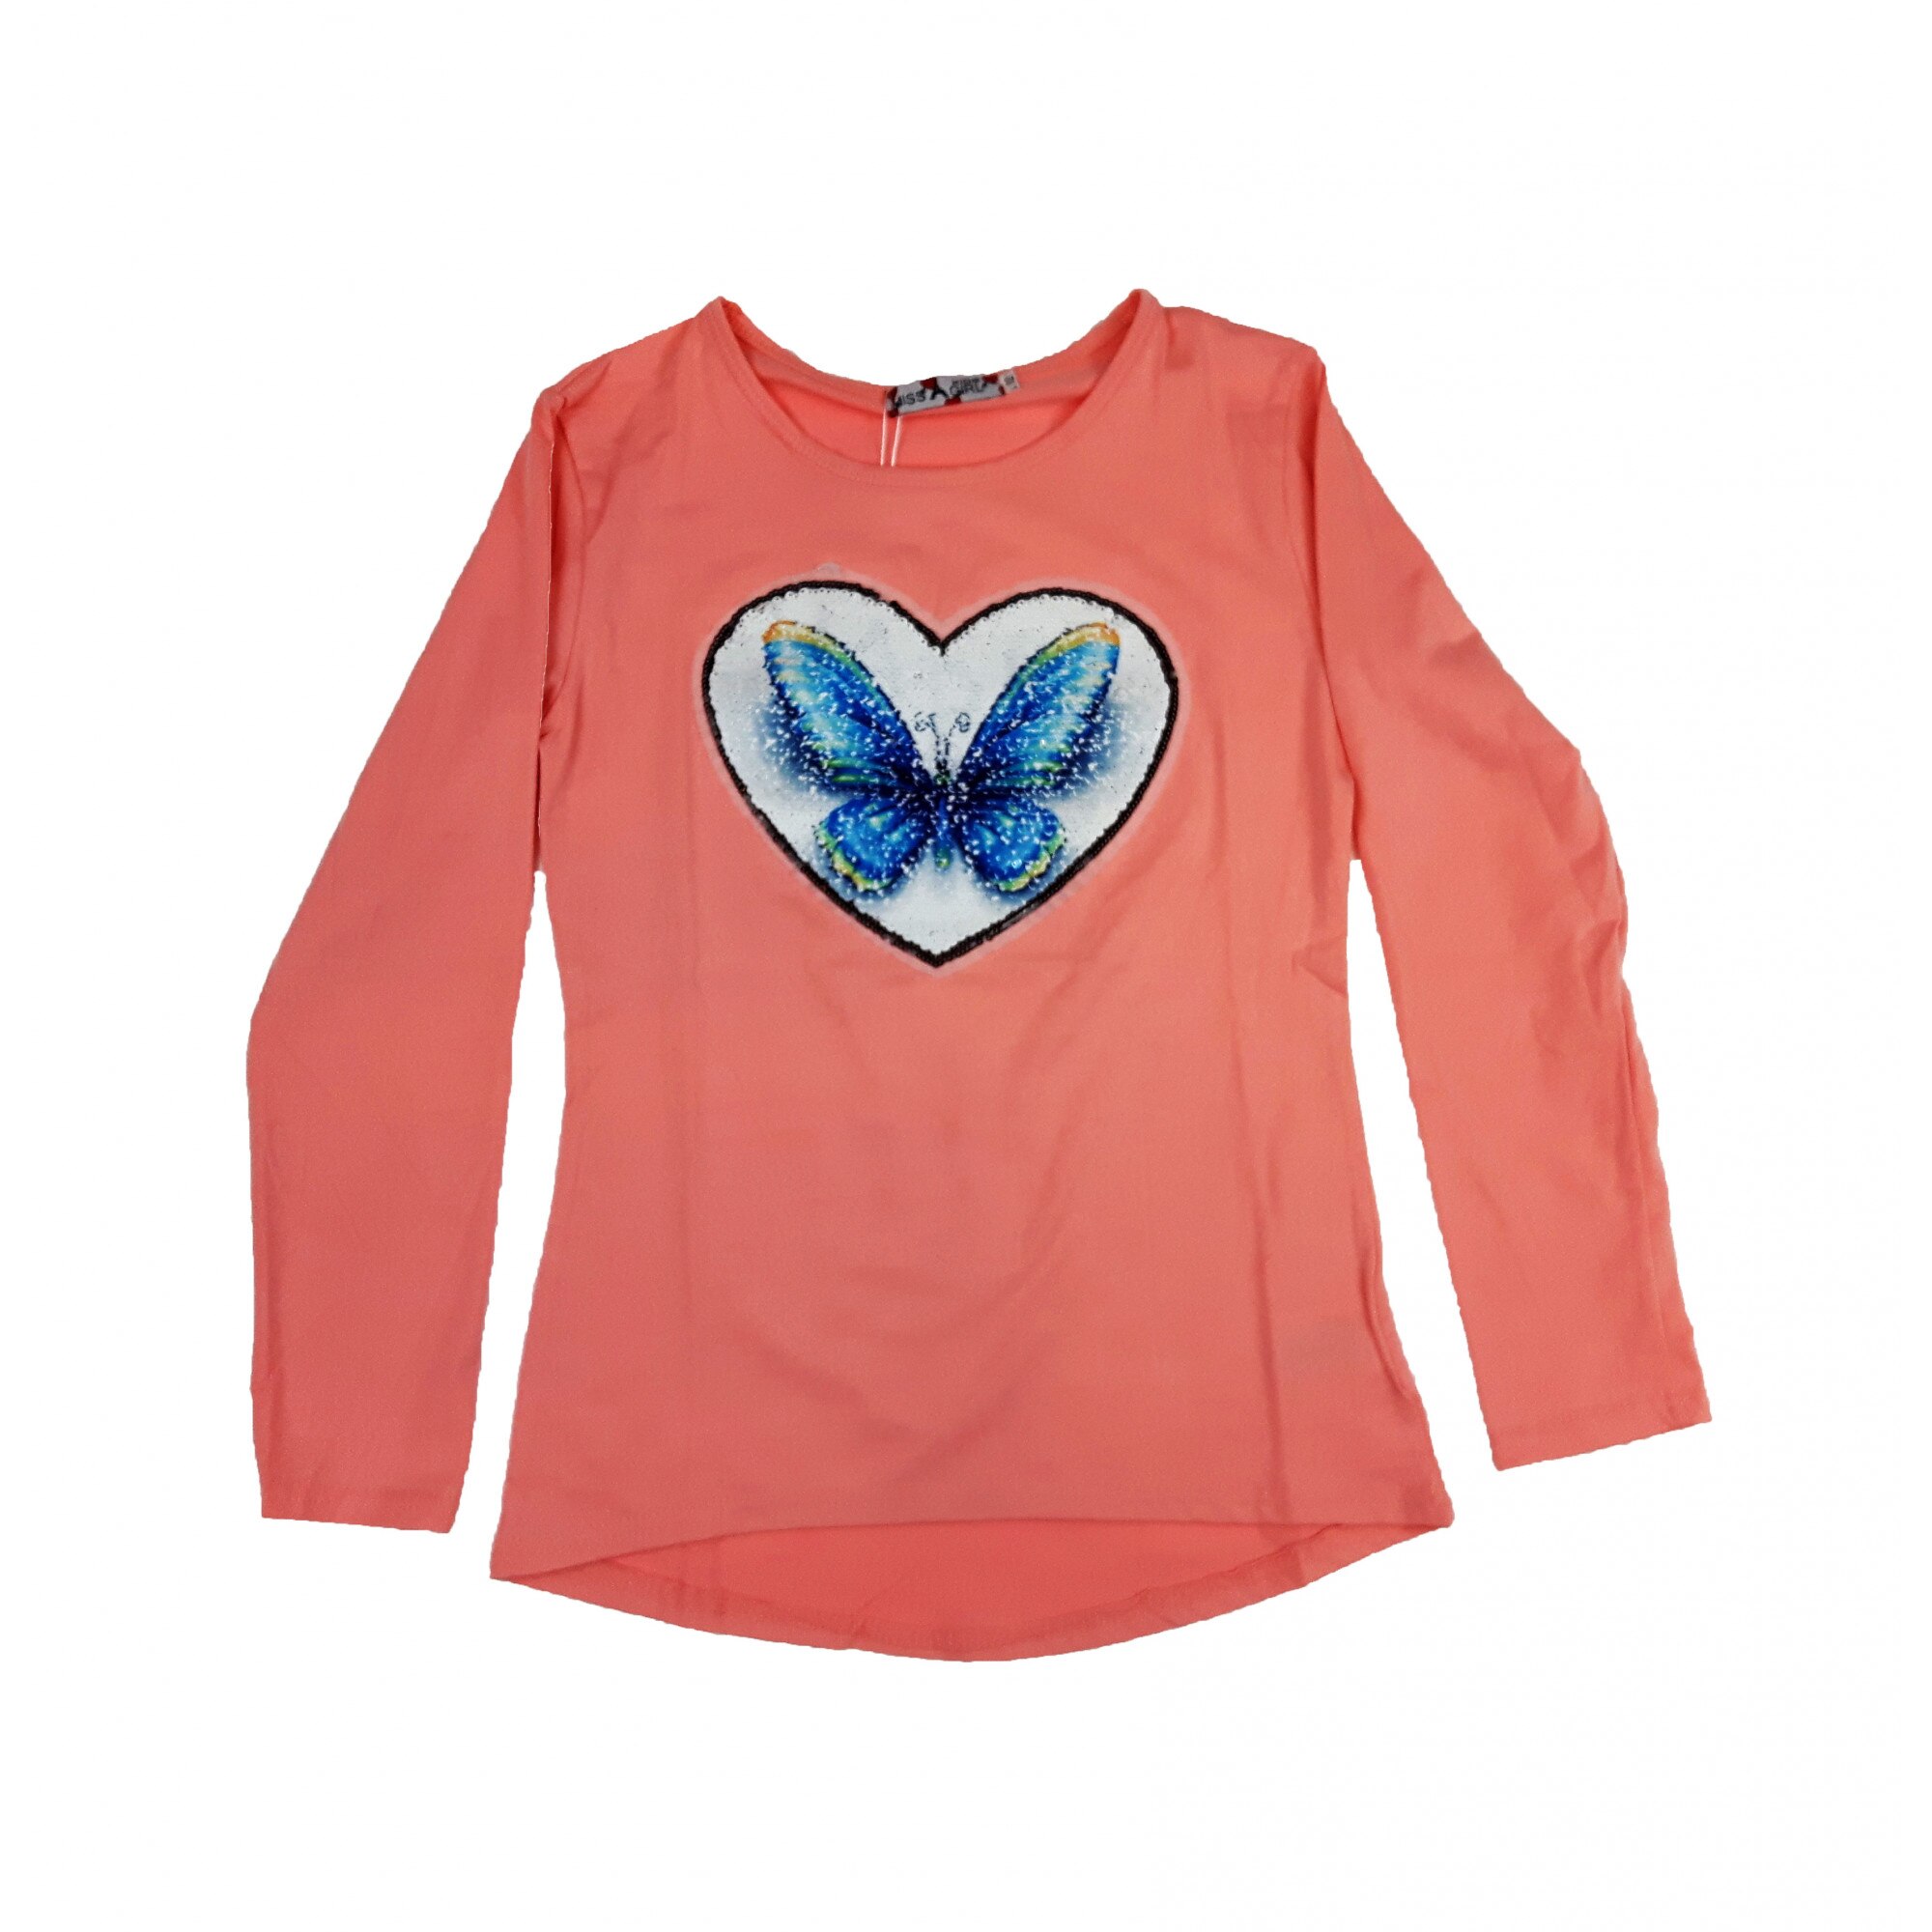 Bluza cu model fluture, culoare roz, realizat din reversibile pentru fete 5-6 ani - eMAG.ro